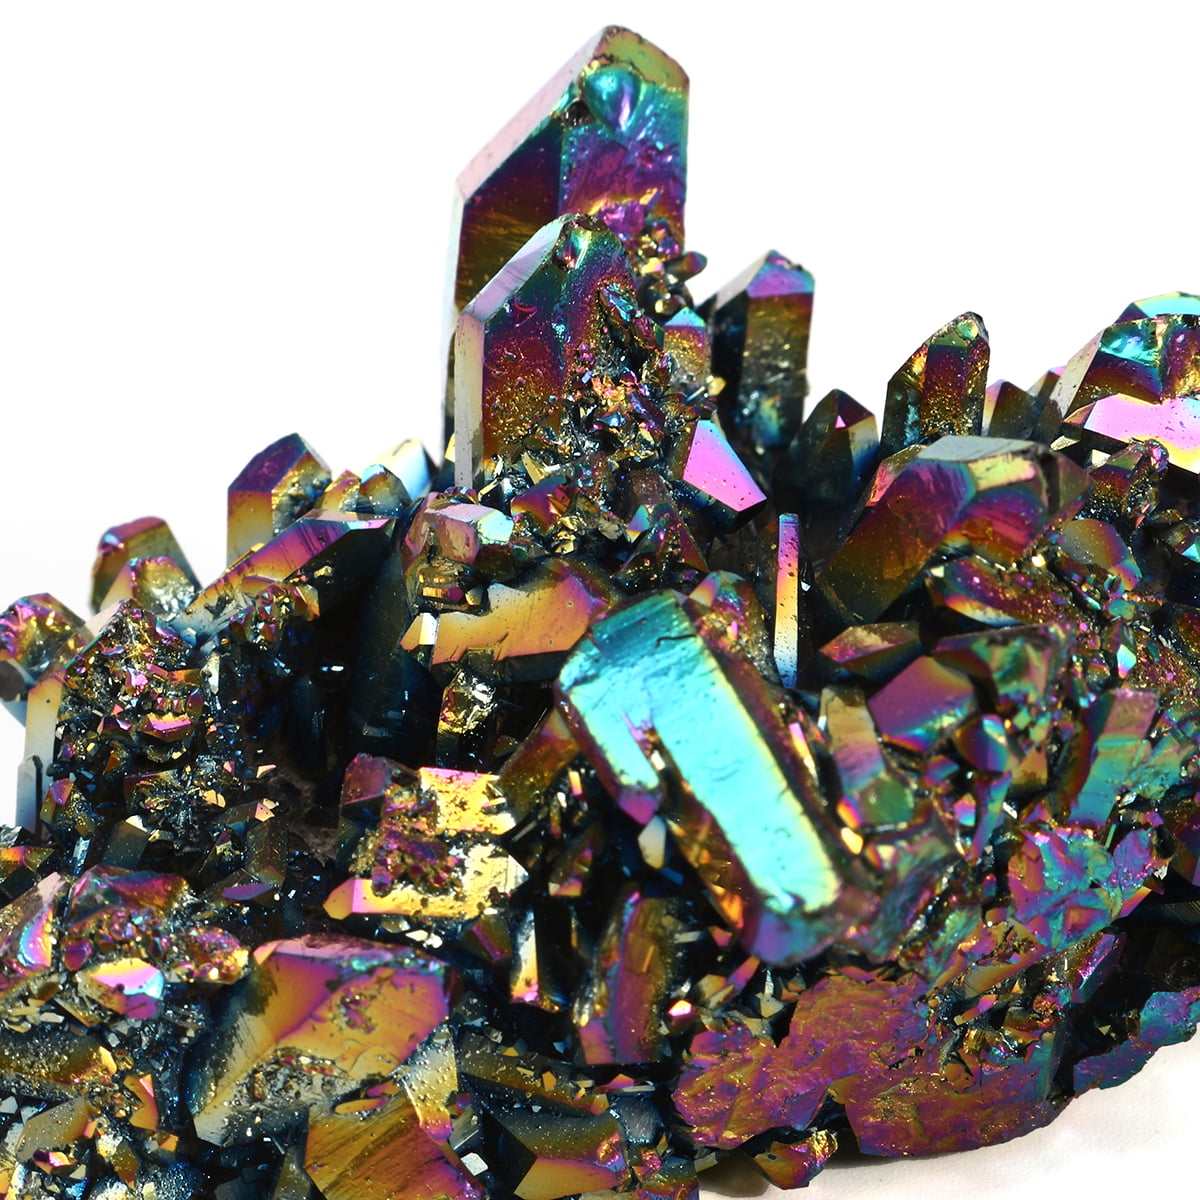 Rainbow Titanium Coated Drusy Quartz Geode Crystal Cluster Specimen Display HOT 